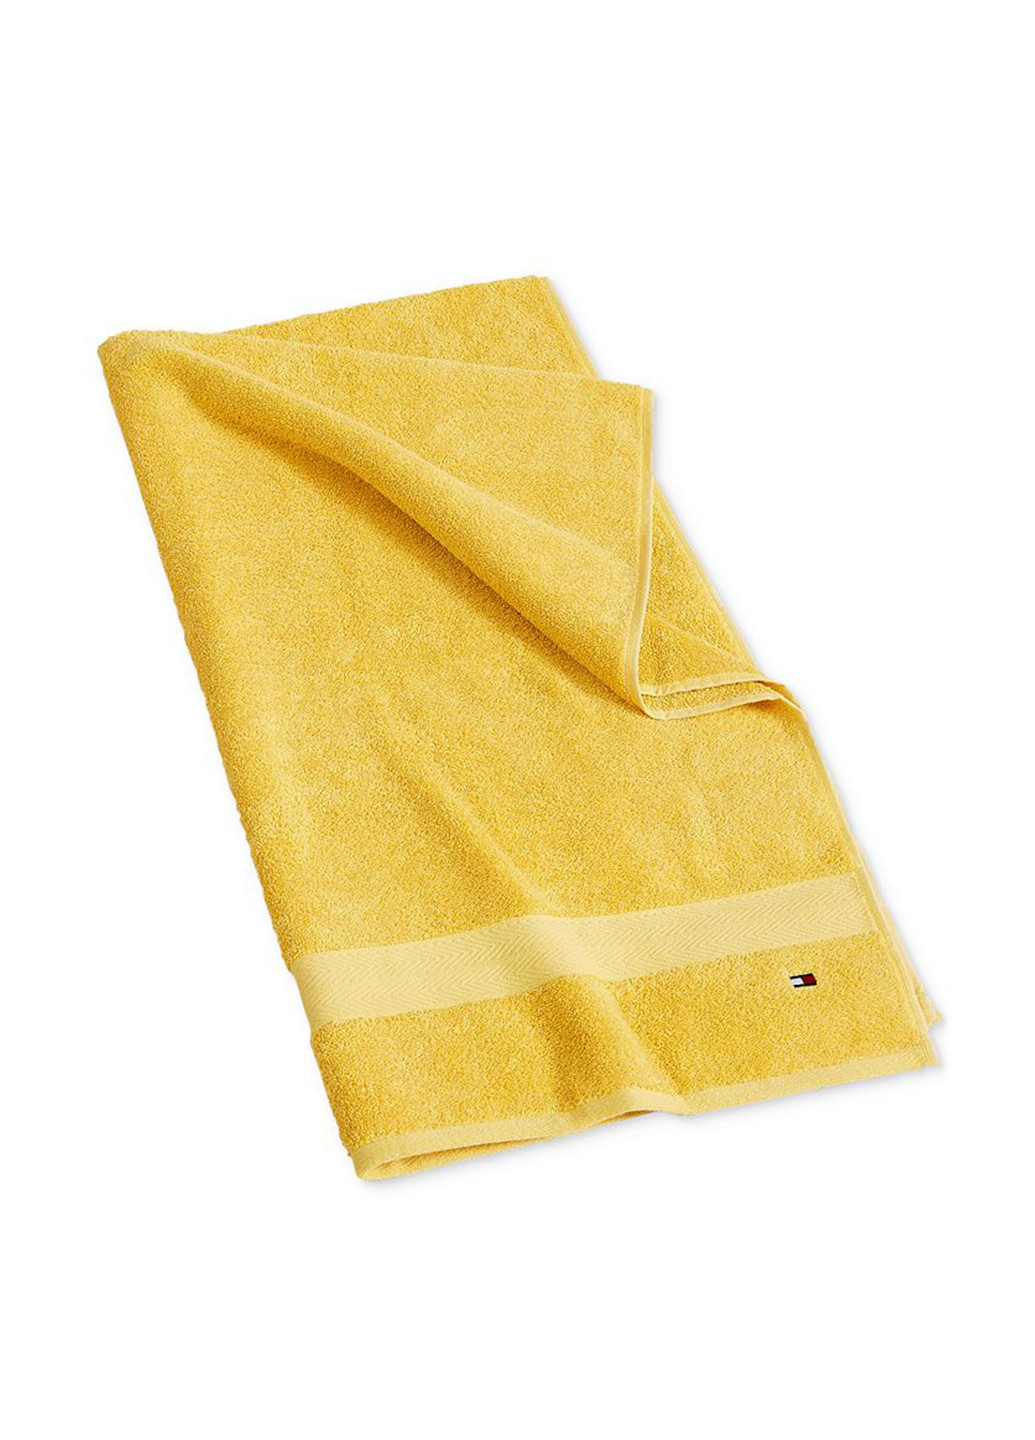 Tommy Hilfiger полотенце, 76х138 см однотонный желтый производство - Индия